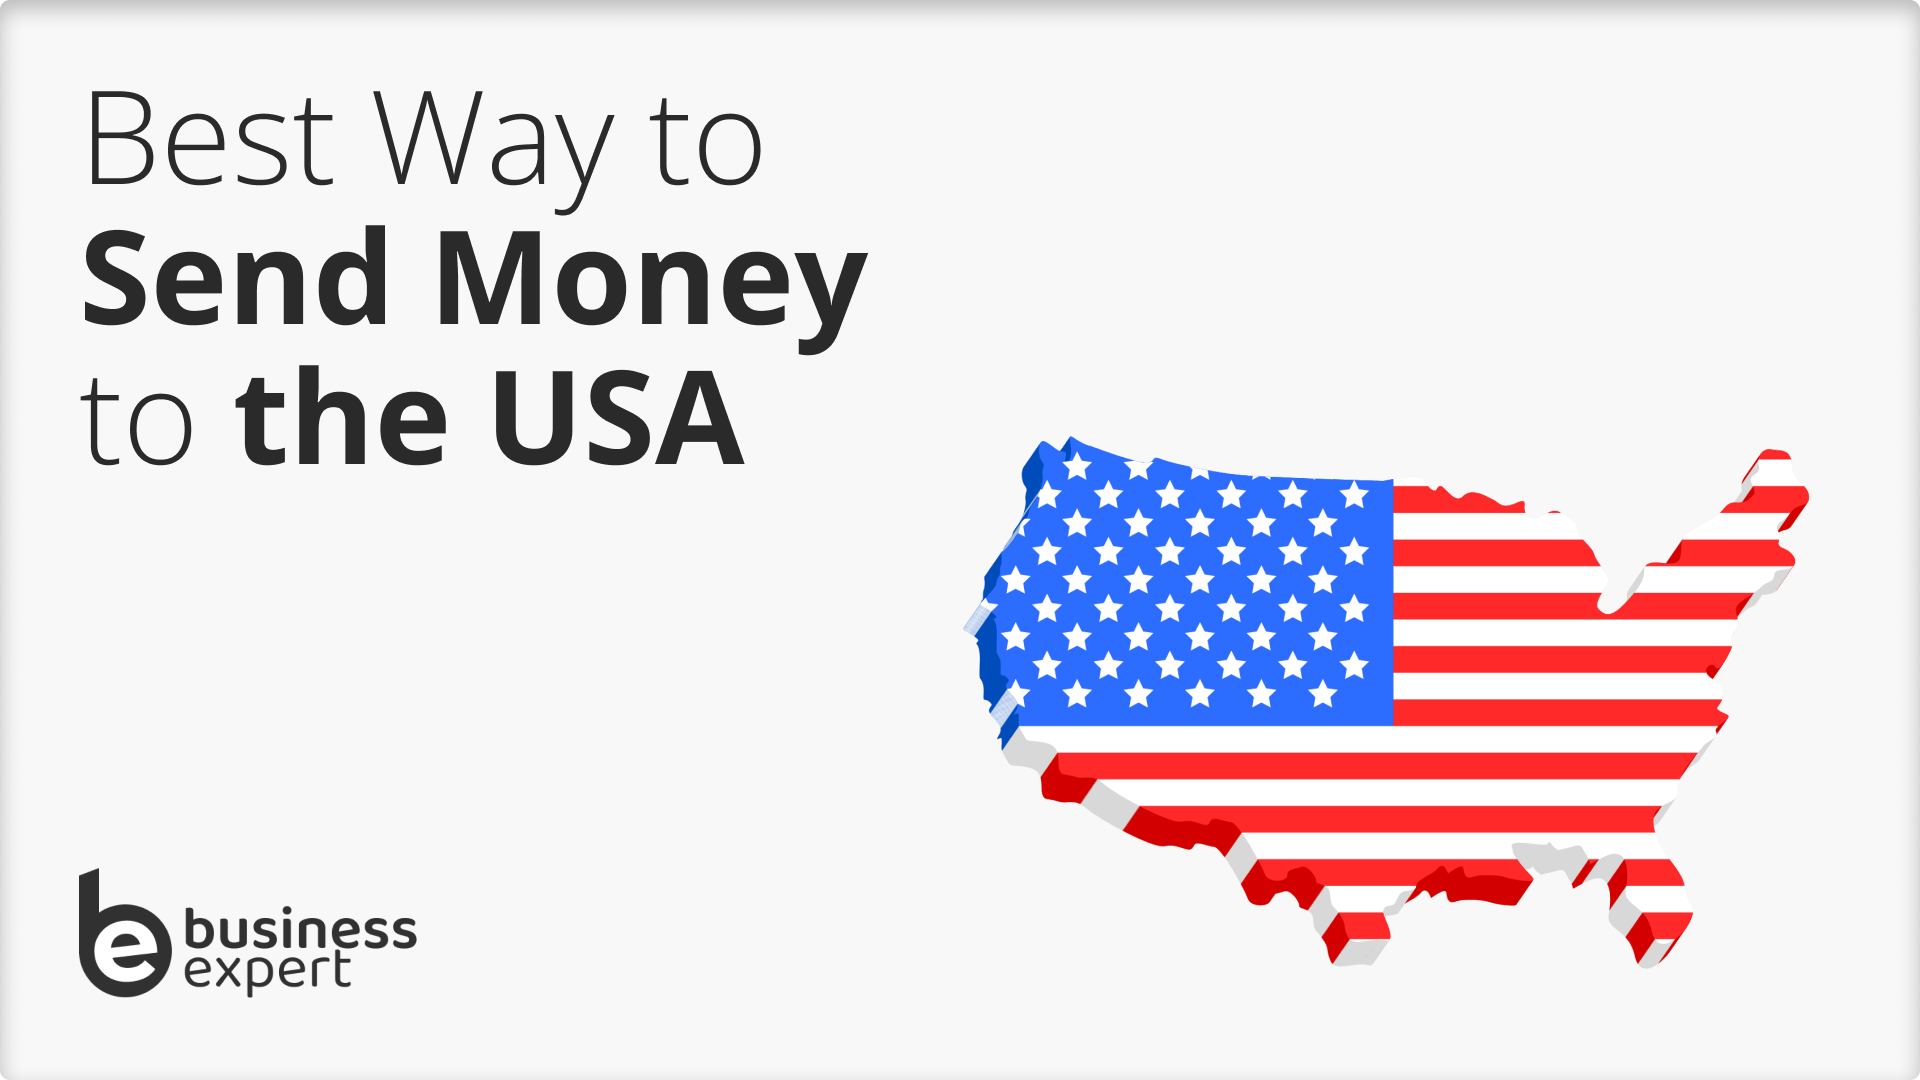 Send Money to the USA